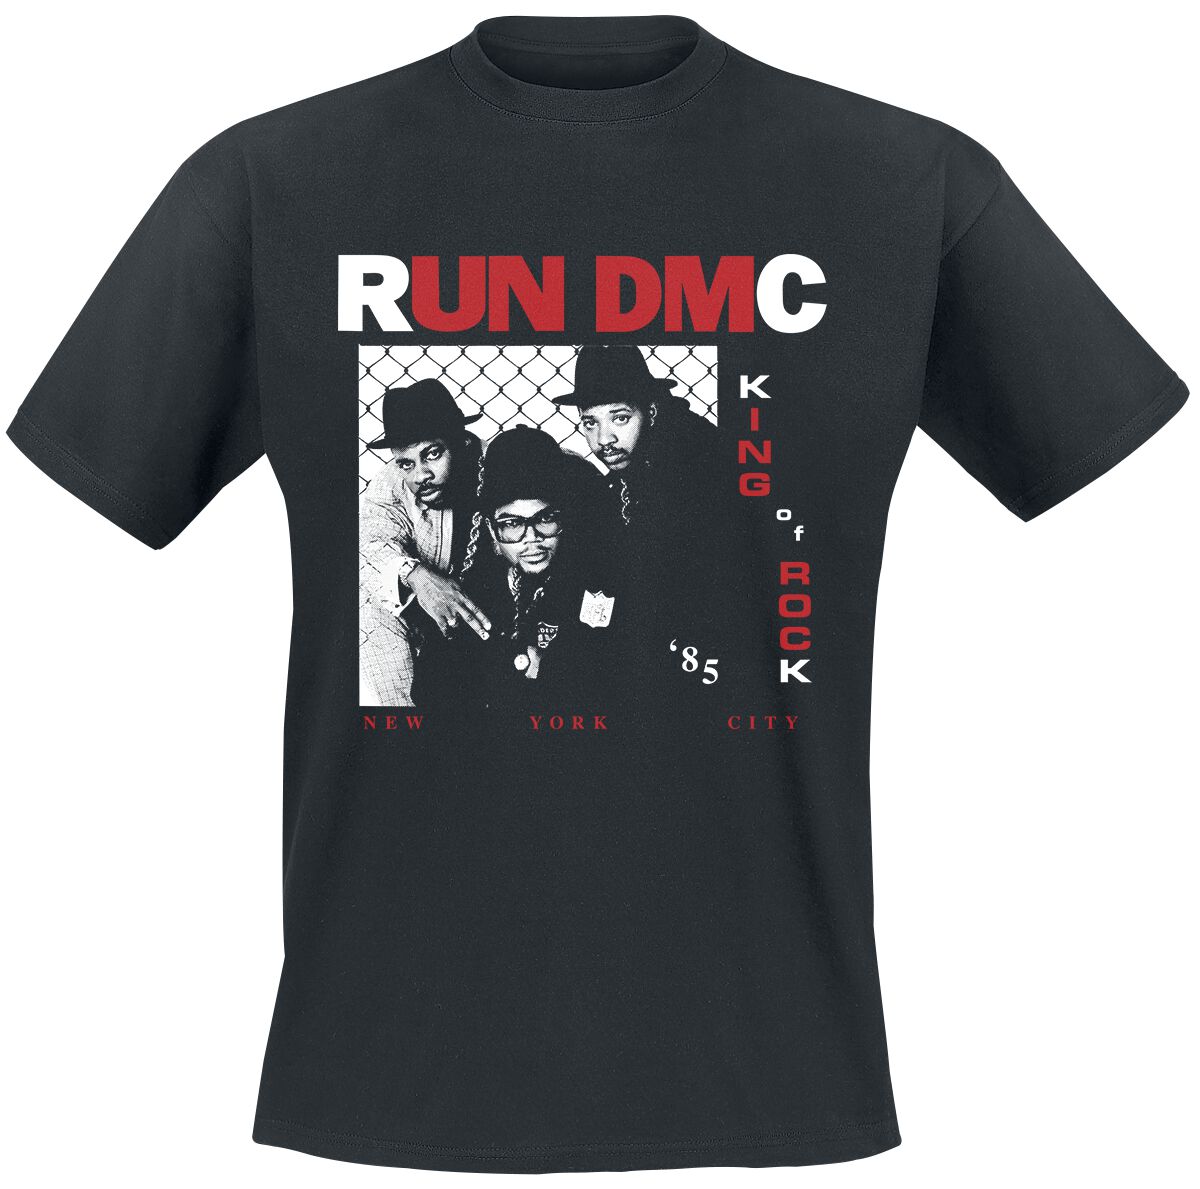 Run DMC T-Shirt - King Of Rock Photo - S bis XL - für Männer - Größe S - schwarz  - Lizenziertes Merchandise!